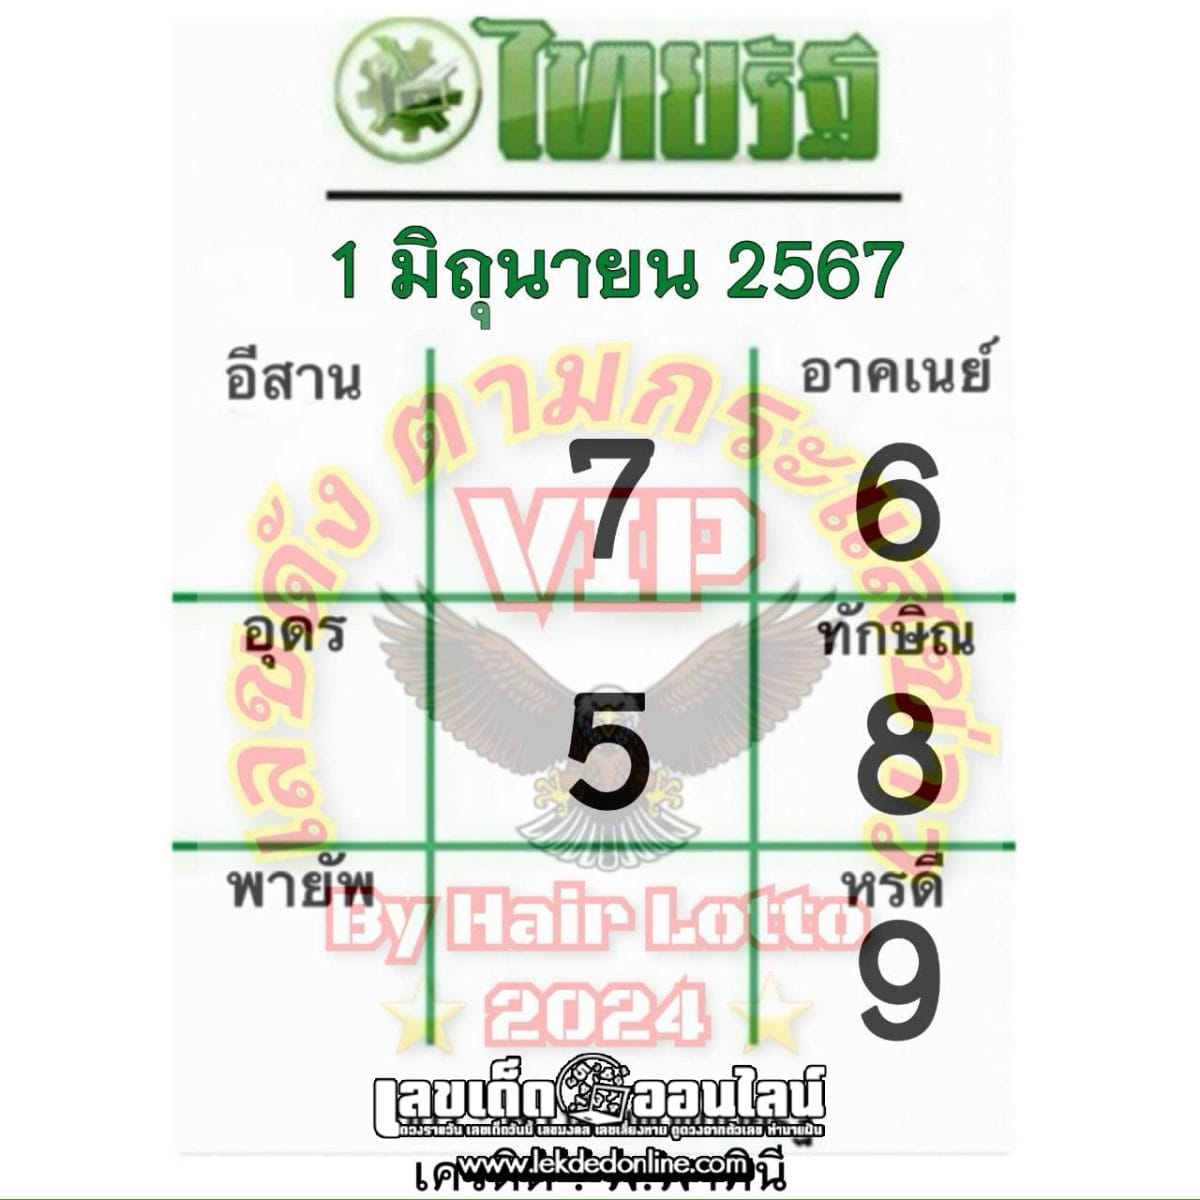 เลขไทยรัฐ 1 6 67-"Thairath number"